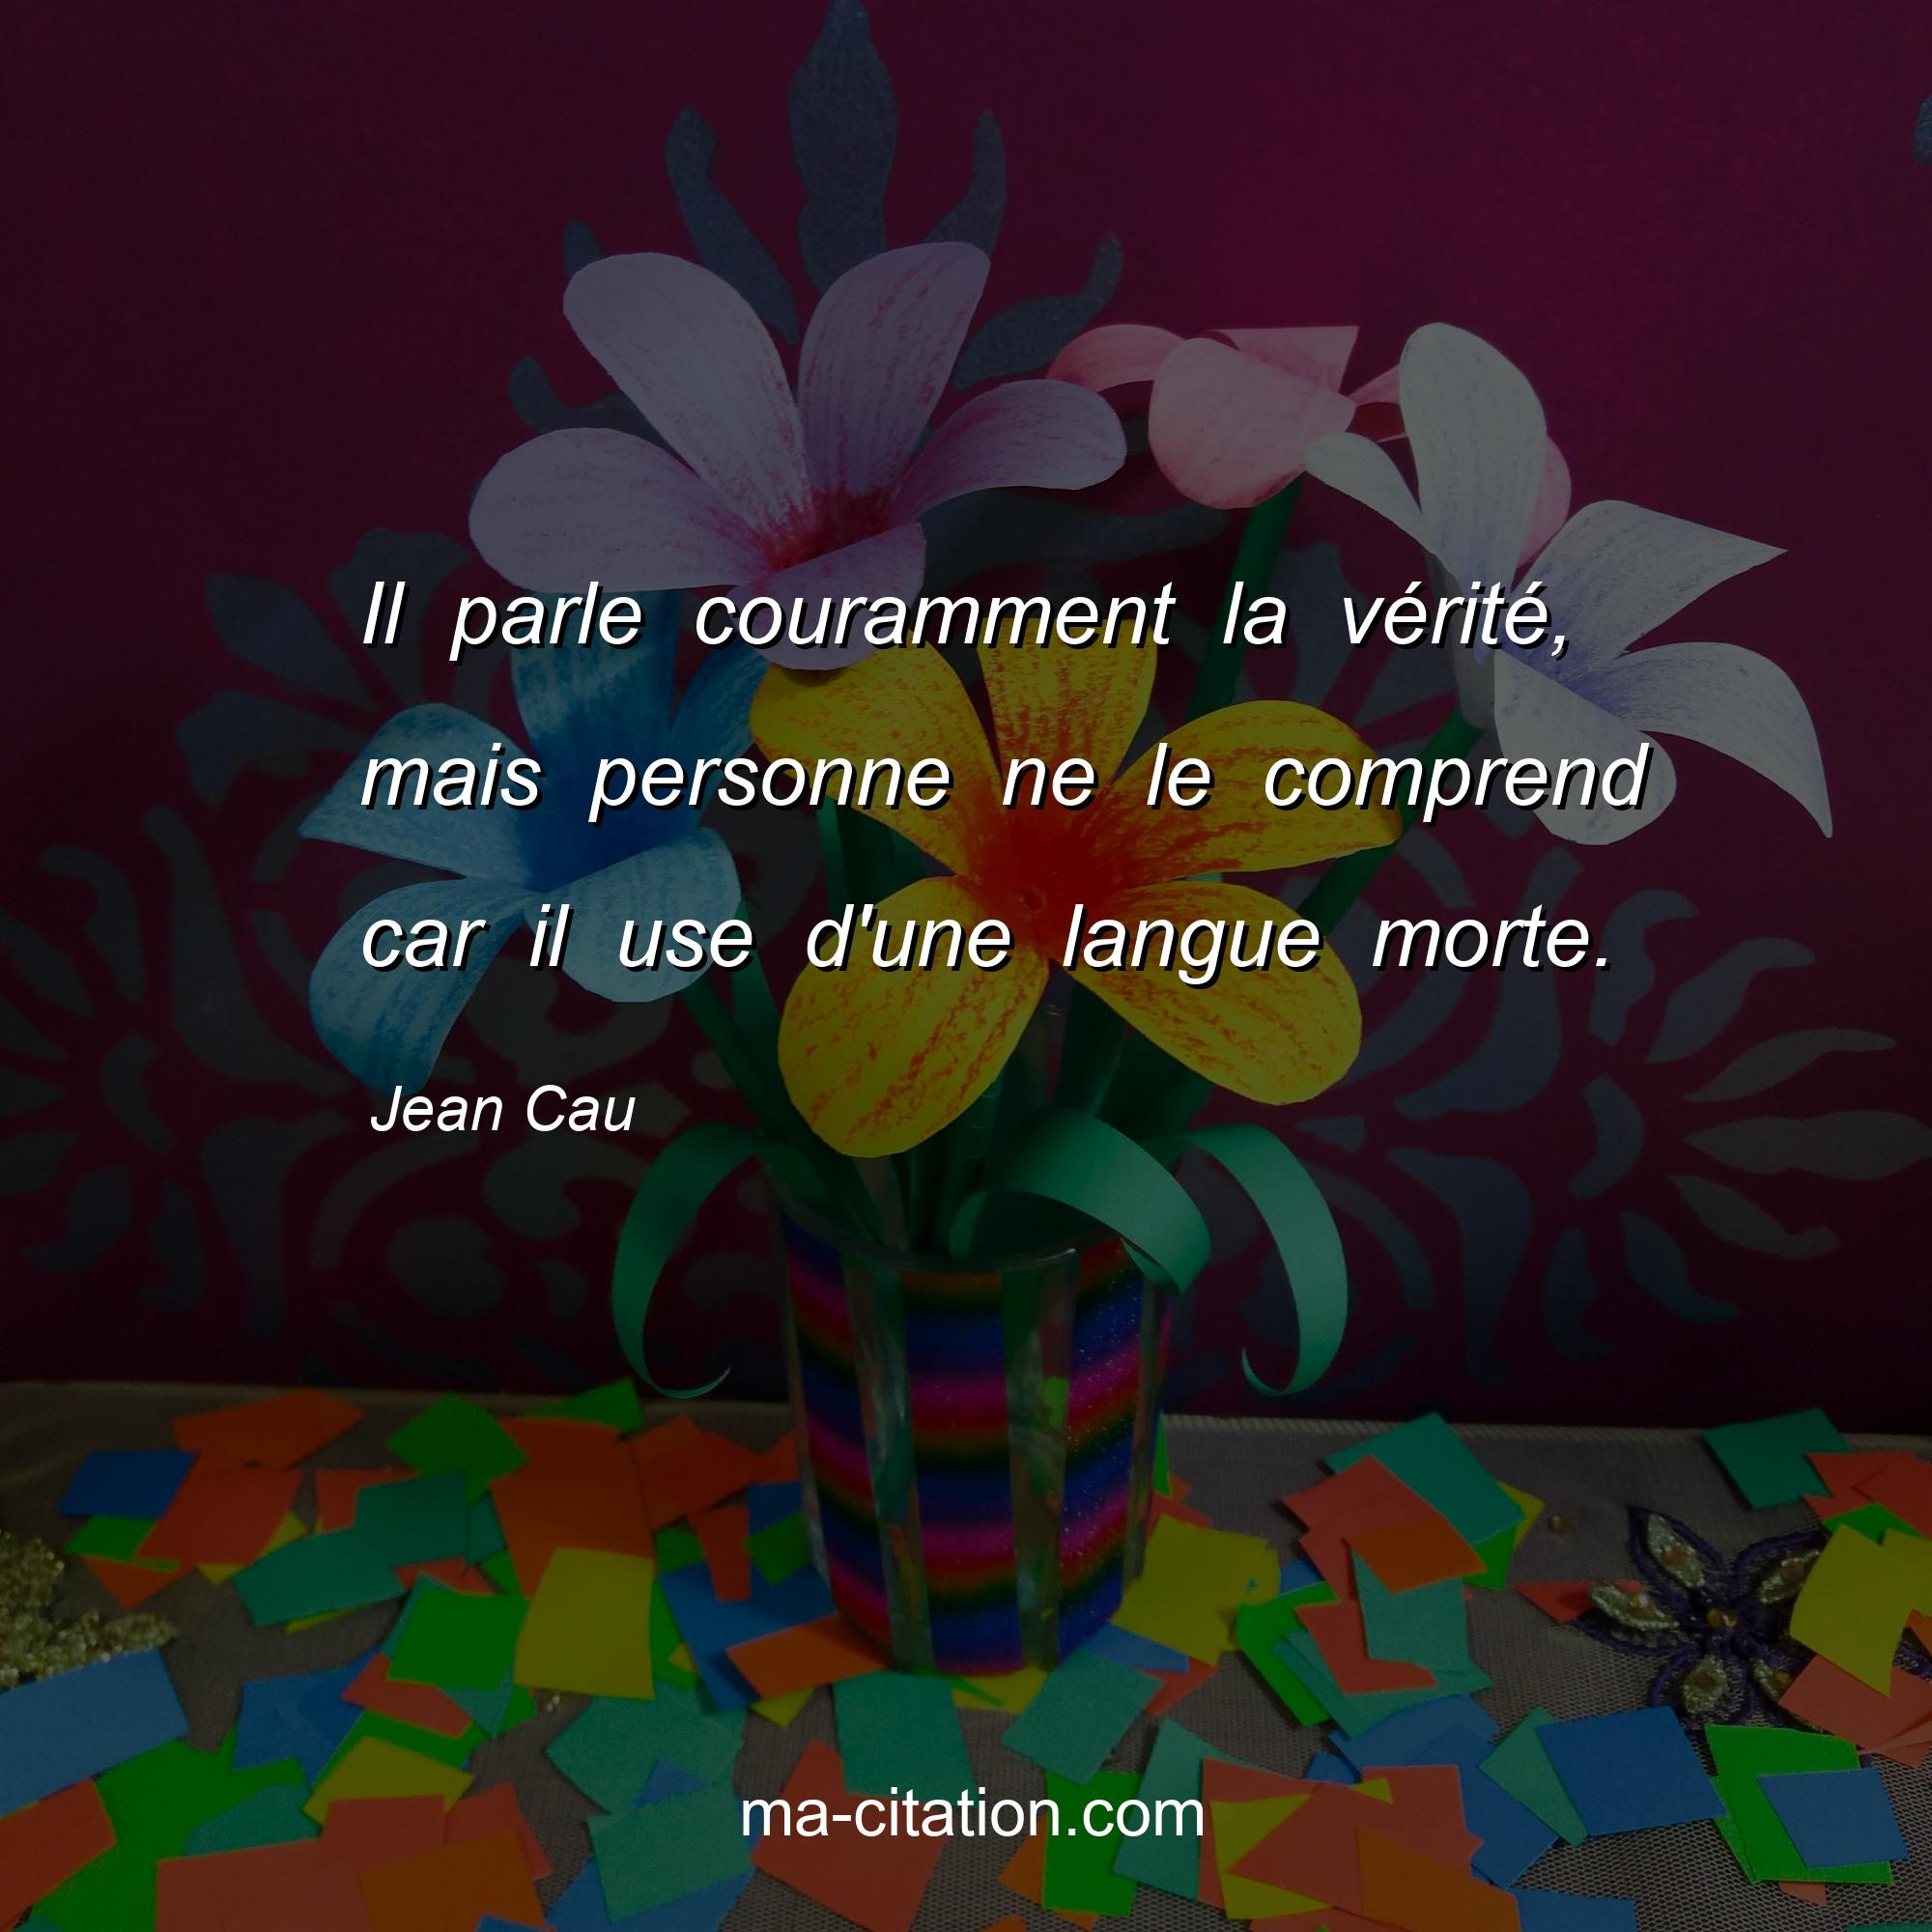 Jean Cau : Il parle couramment la vérité, mais personne ne le comprend car il use d'une langue morte.